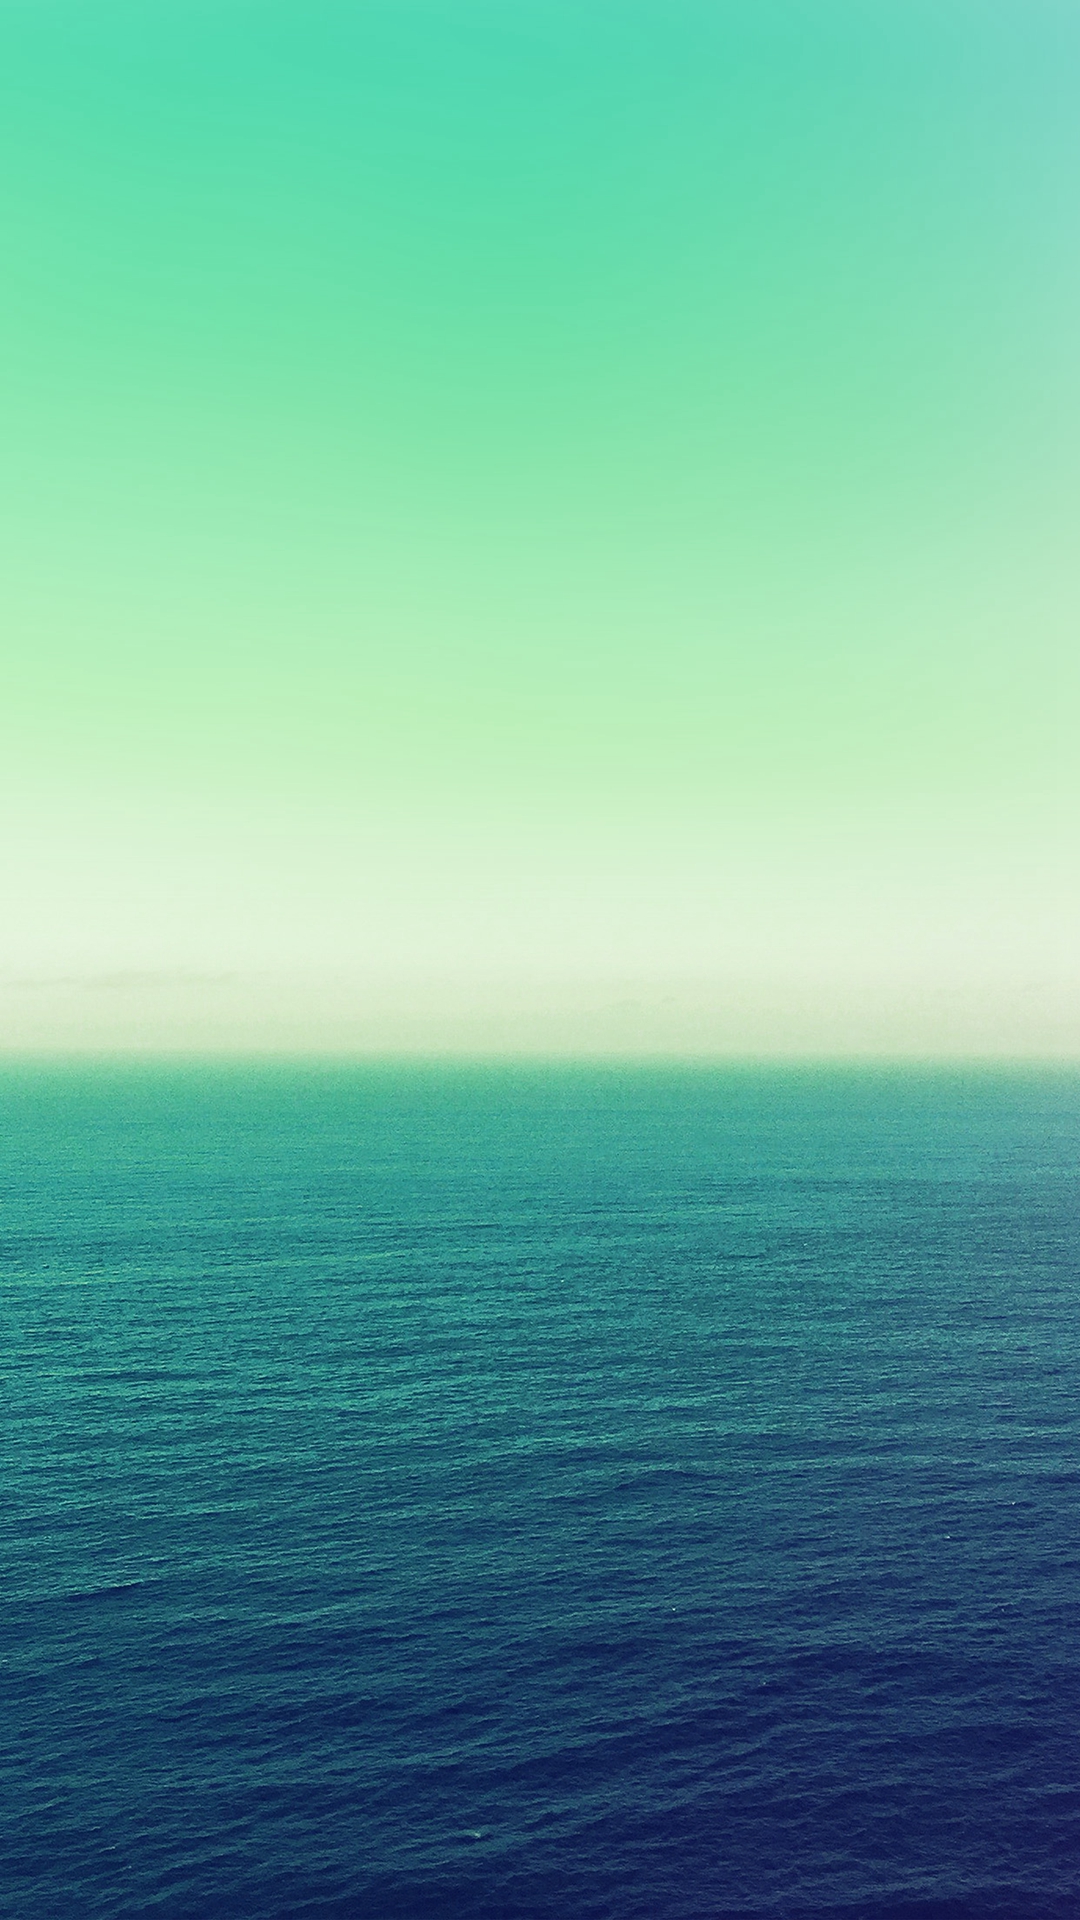 바다 녹색 벽지,수평선,하늘,바다,초록,푸른